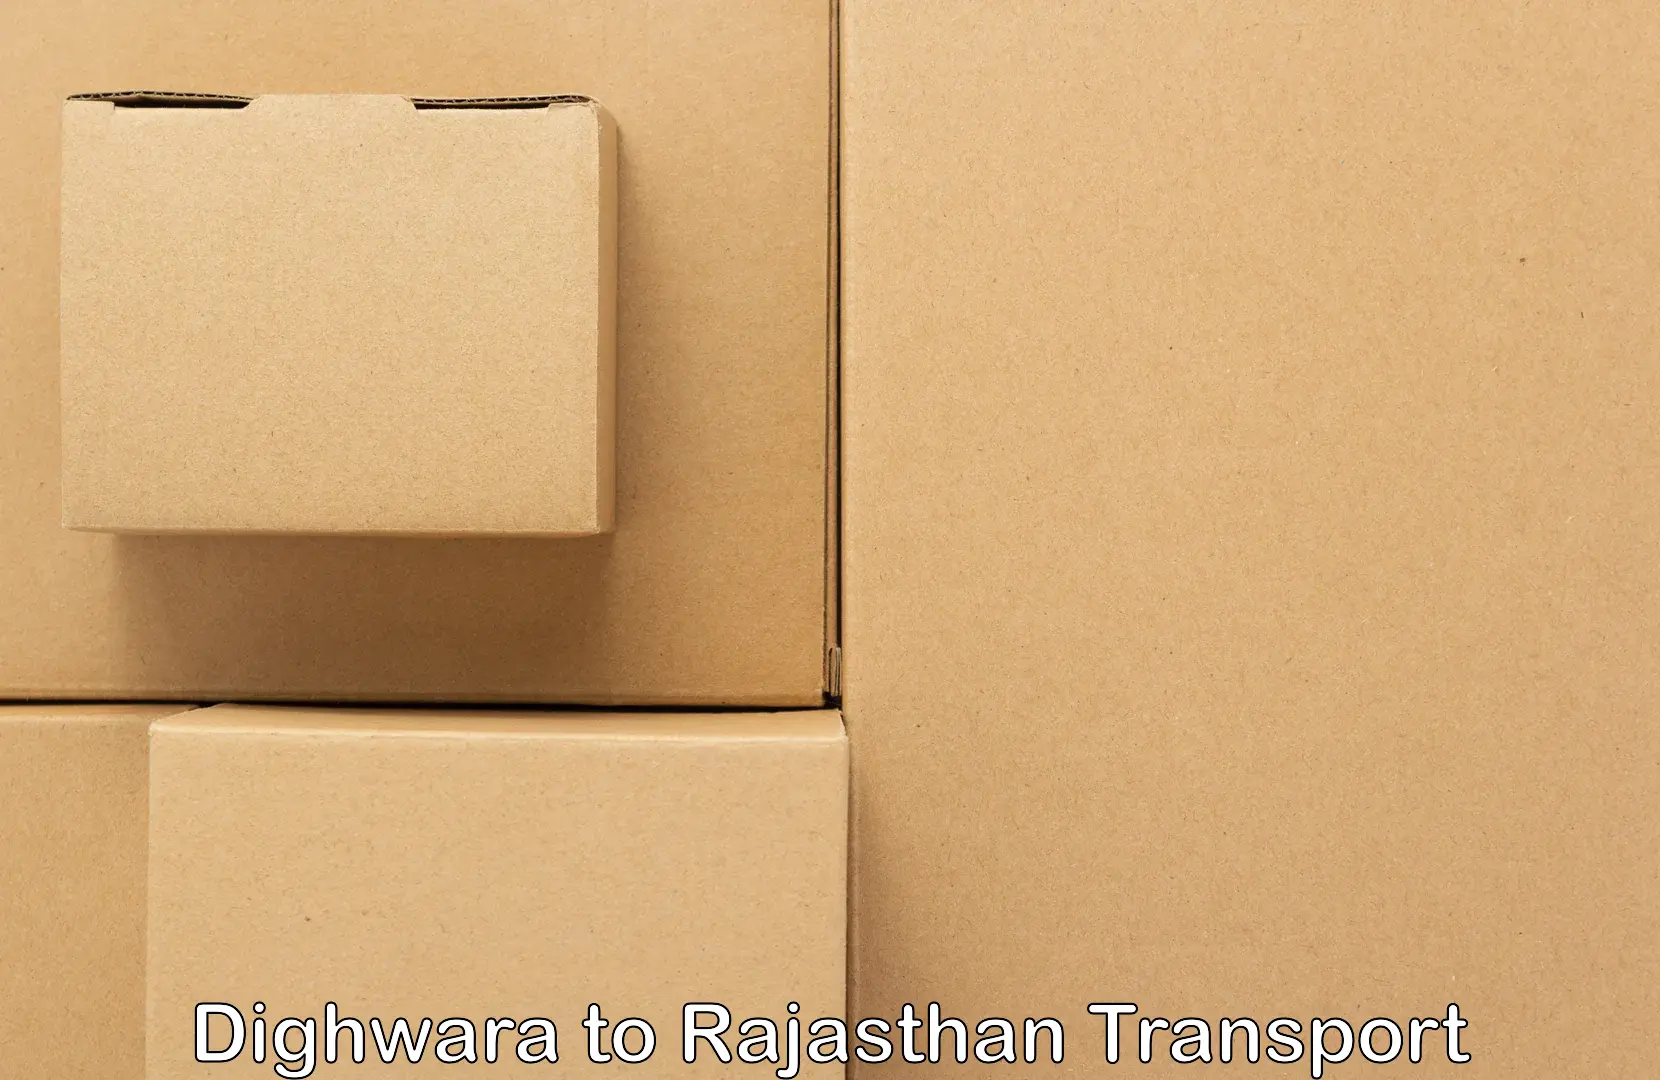 Shipping partner Dighwara to Anupgarh